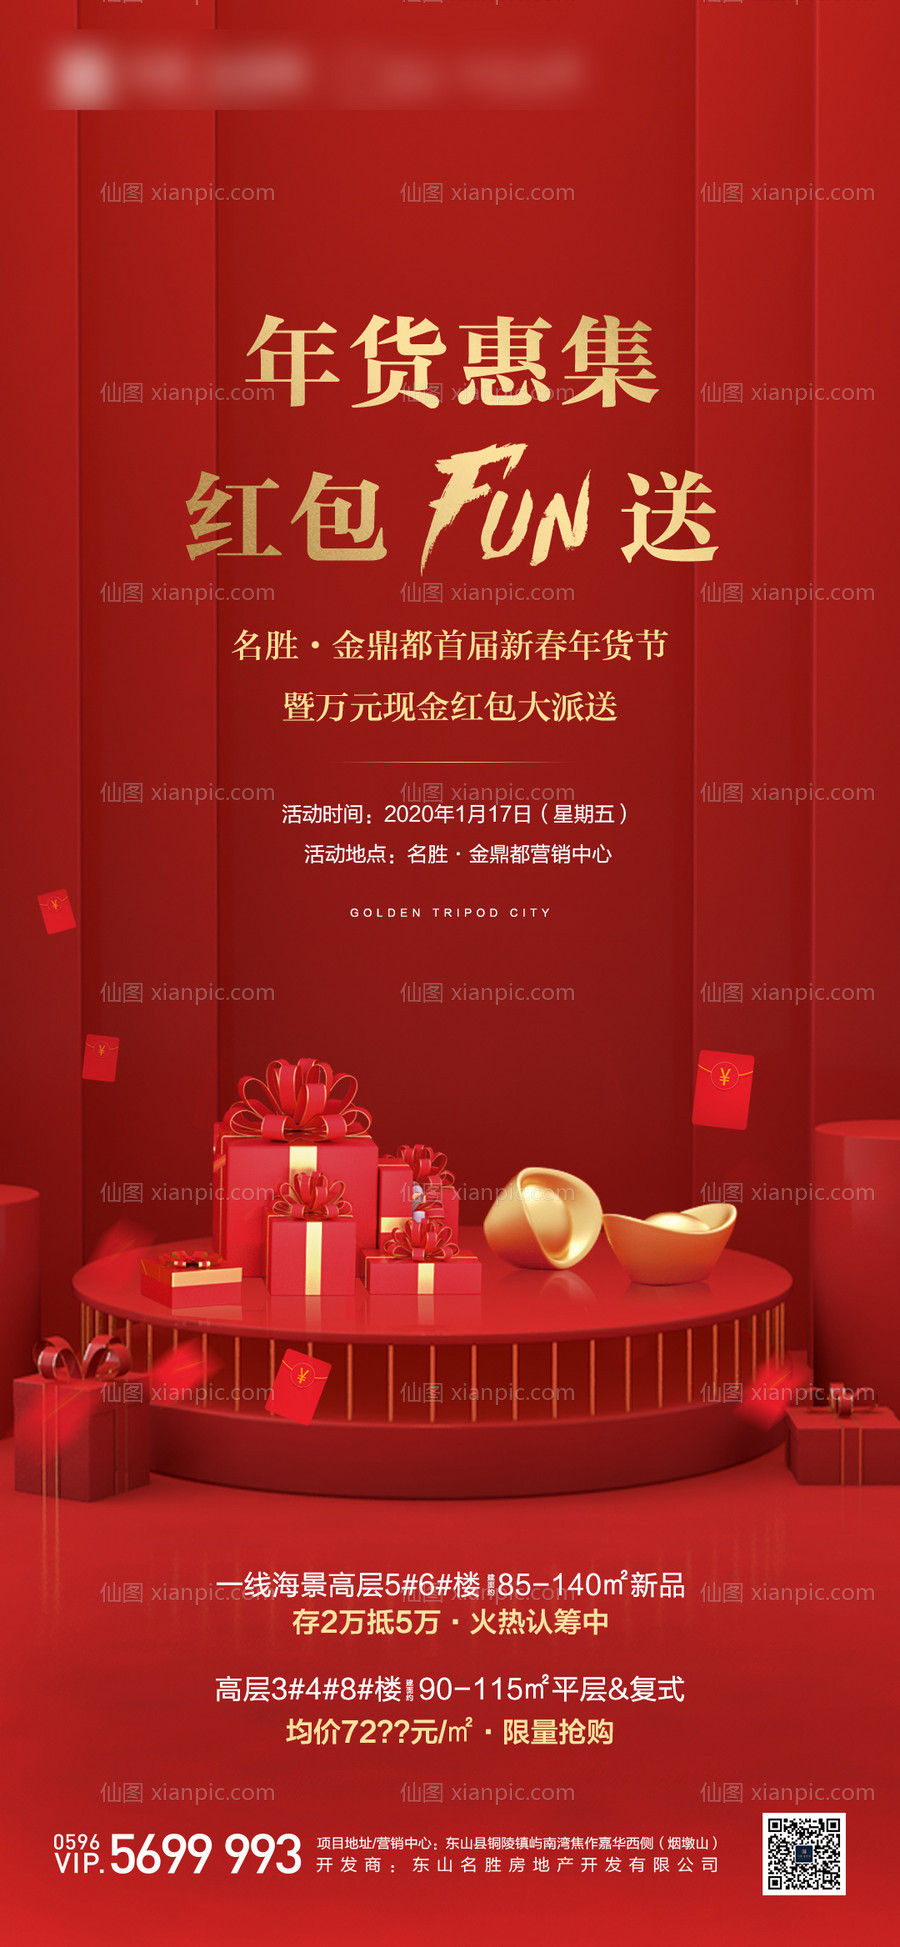 素材乐-地产新春年货节送红包活动海报